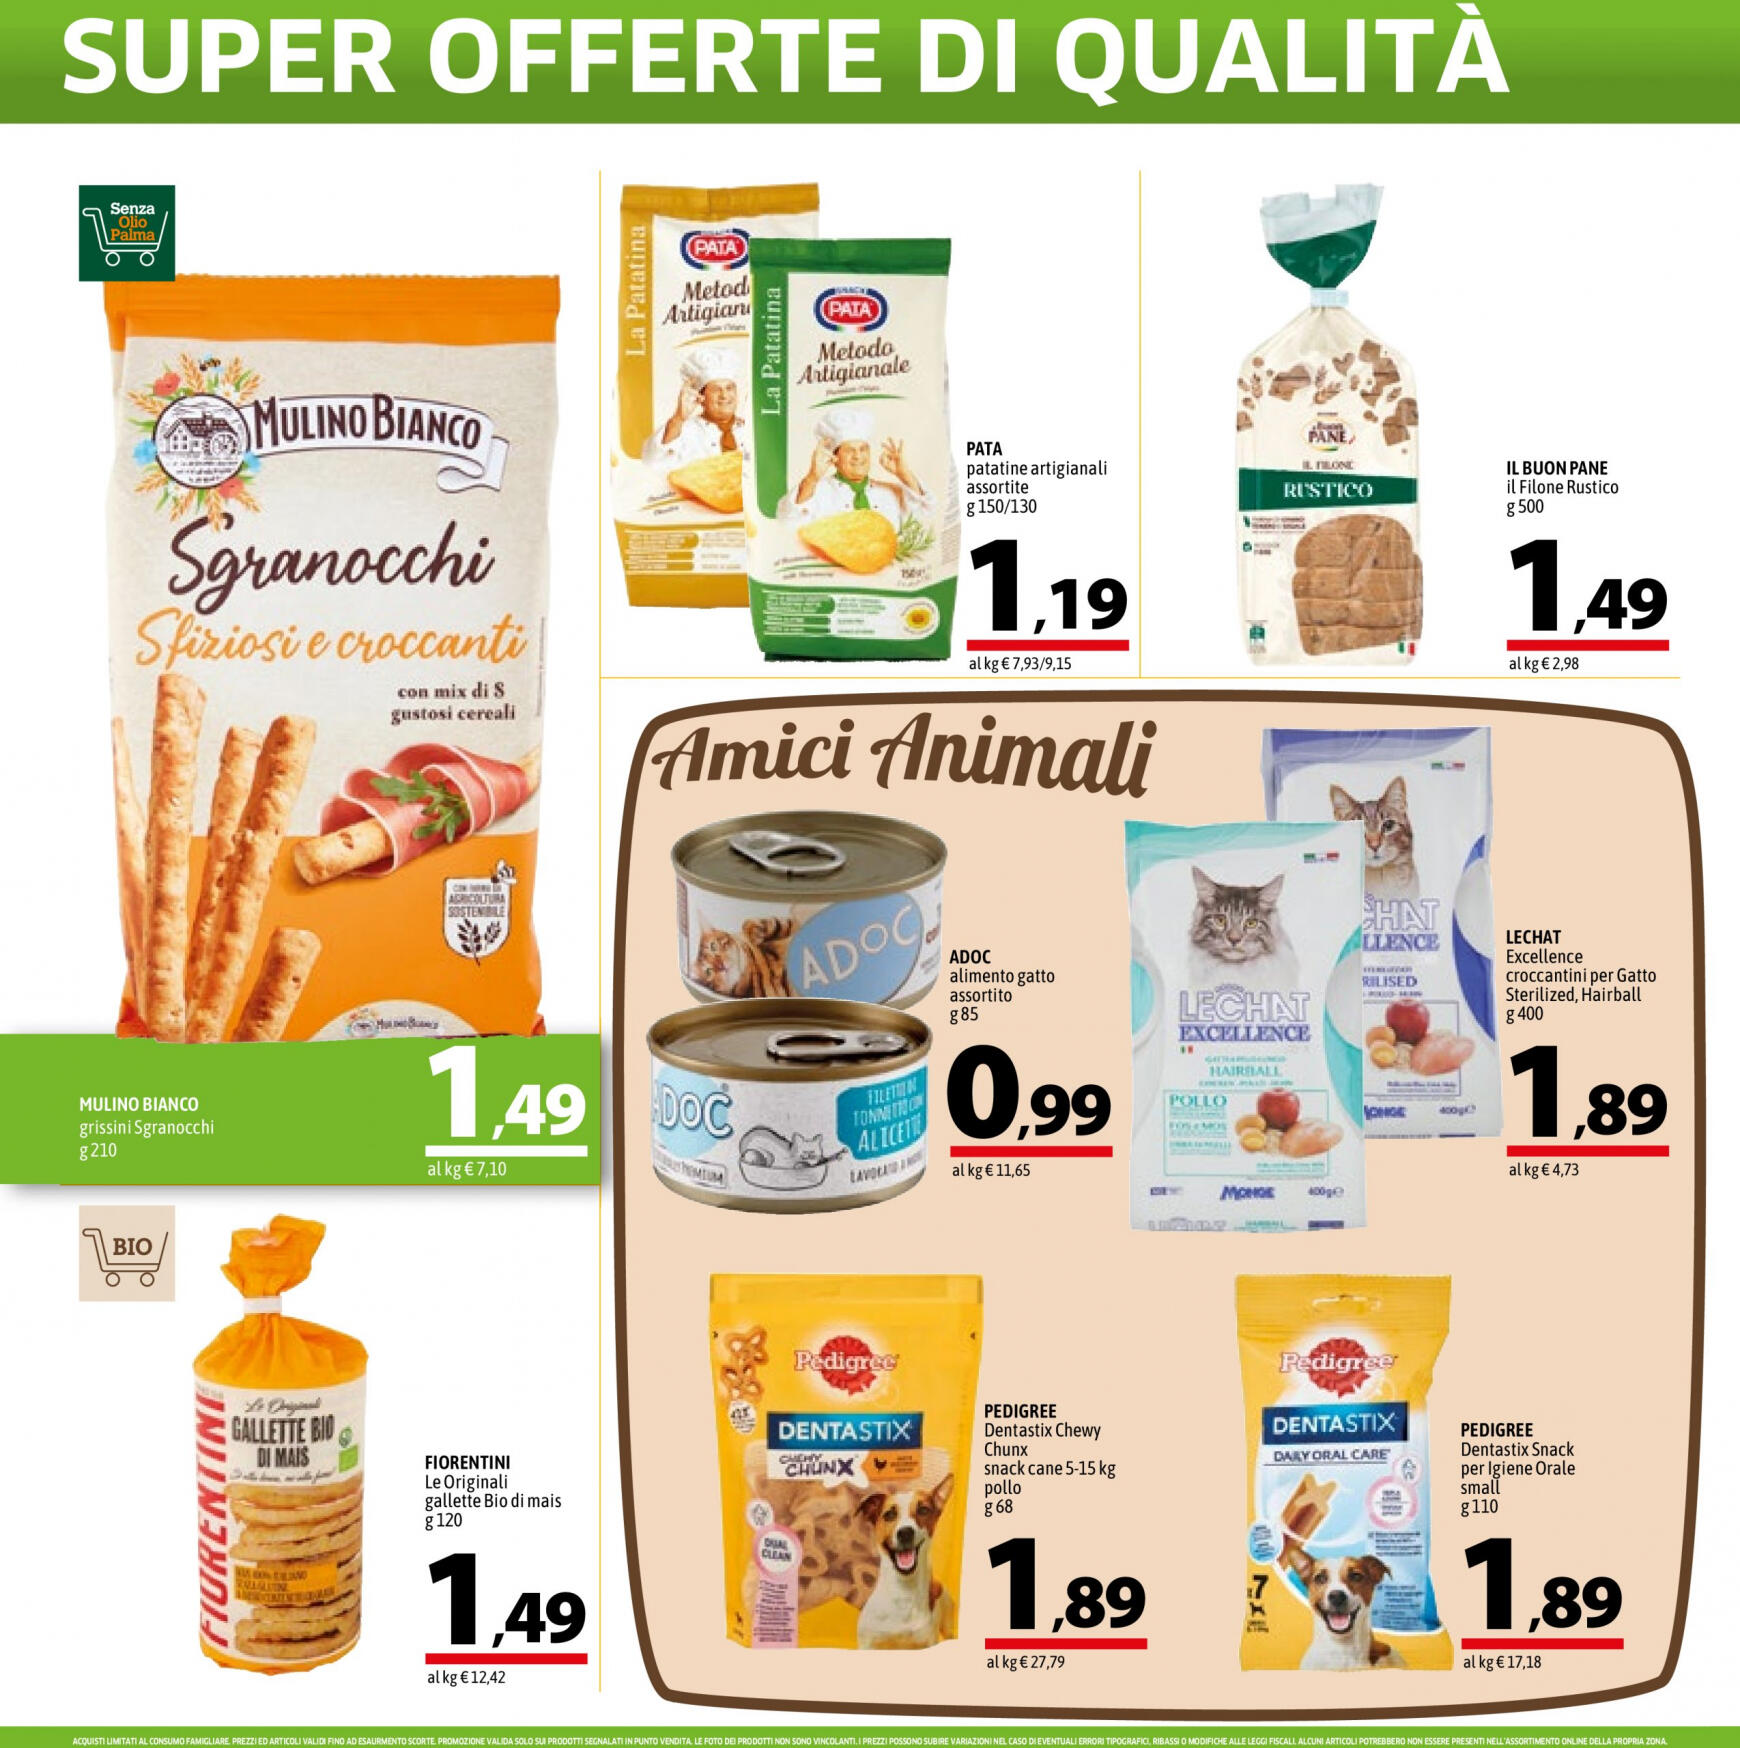 a-o - Nuovo volantino A&O - Super Offerte Di Qualita' 02.05. - 15.05. - page: 10